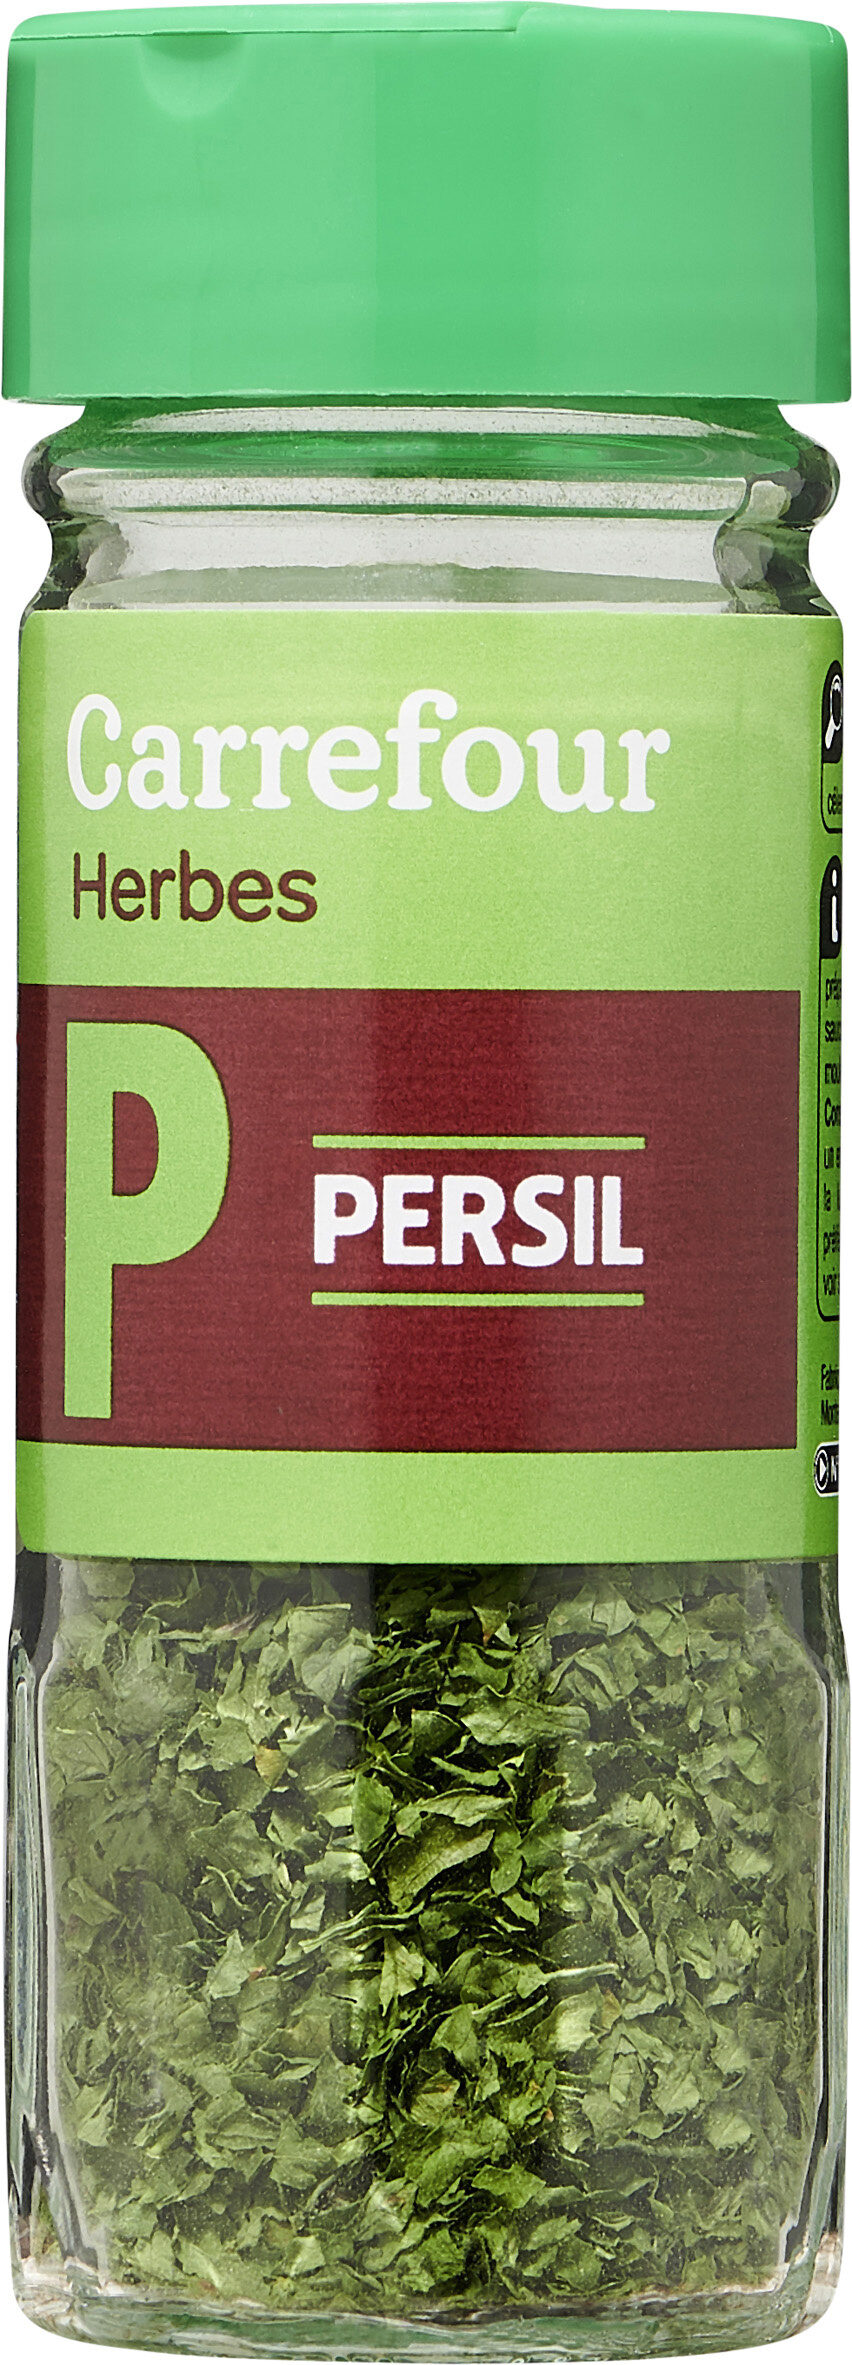 Persil - Produit